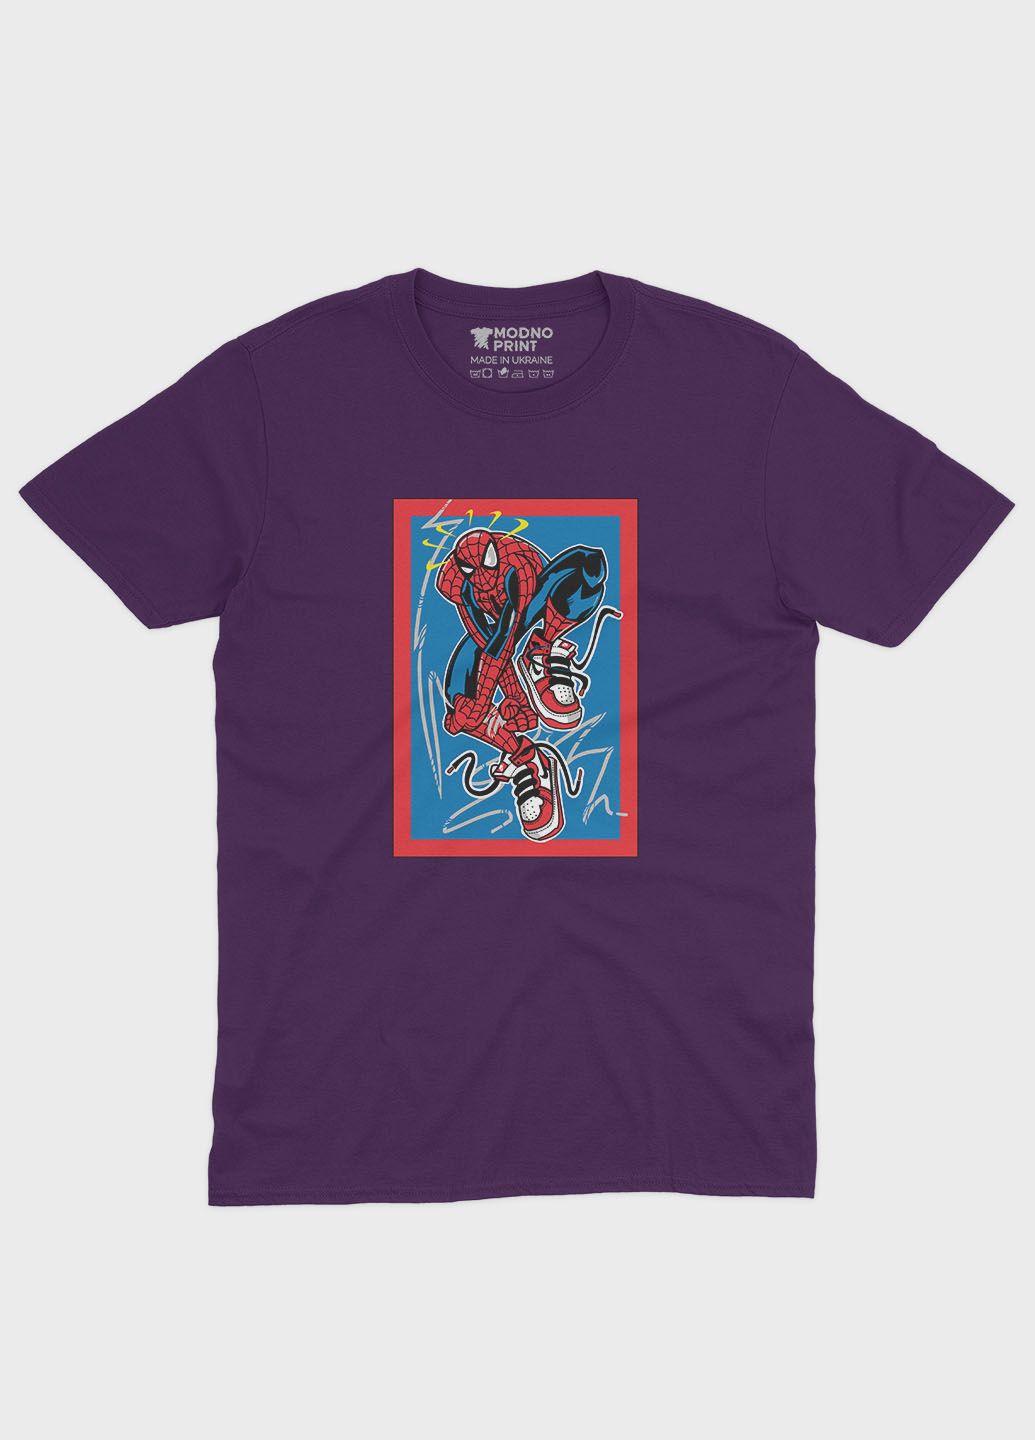 Фиолетовая демисезонная футболка для мальчика с принтом супергероя - человек-паук (ts001-1-dby-006-014-067-b) Modno